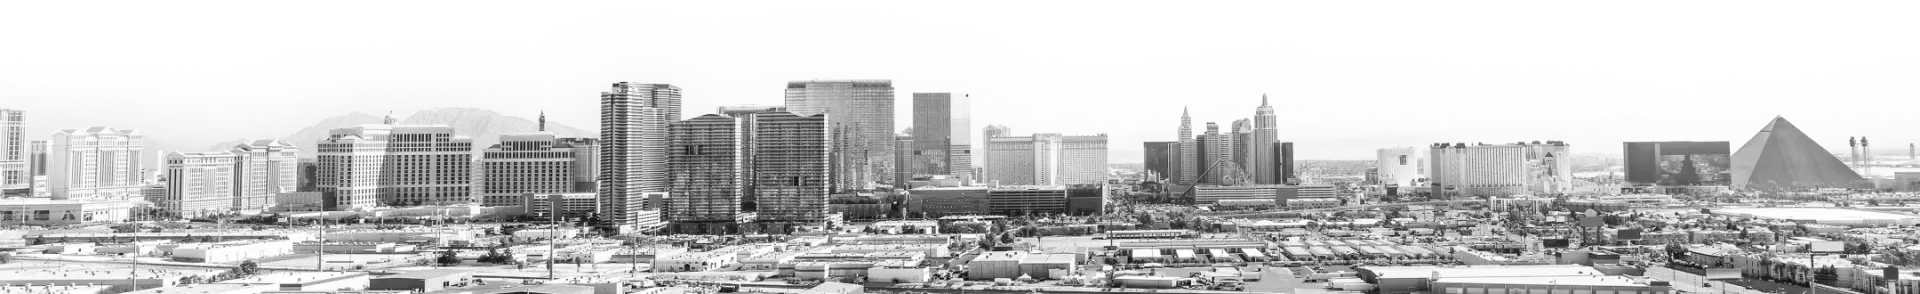 Las Vegas Cityscape